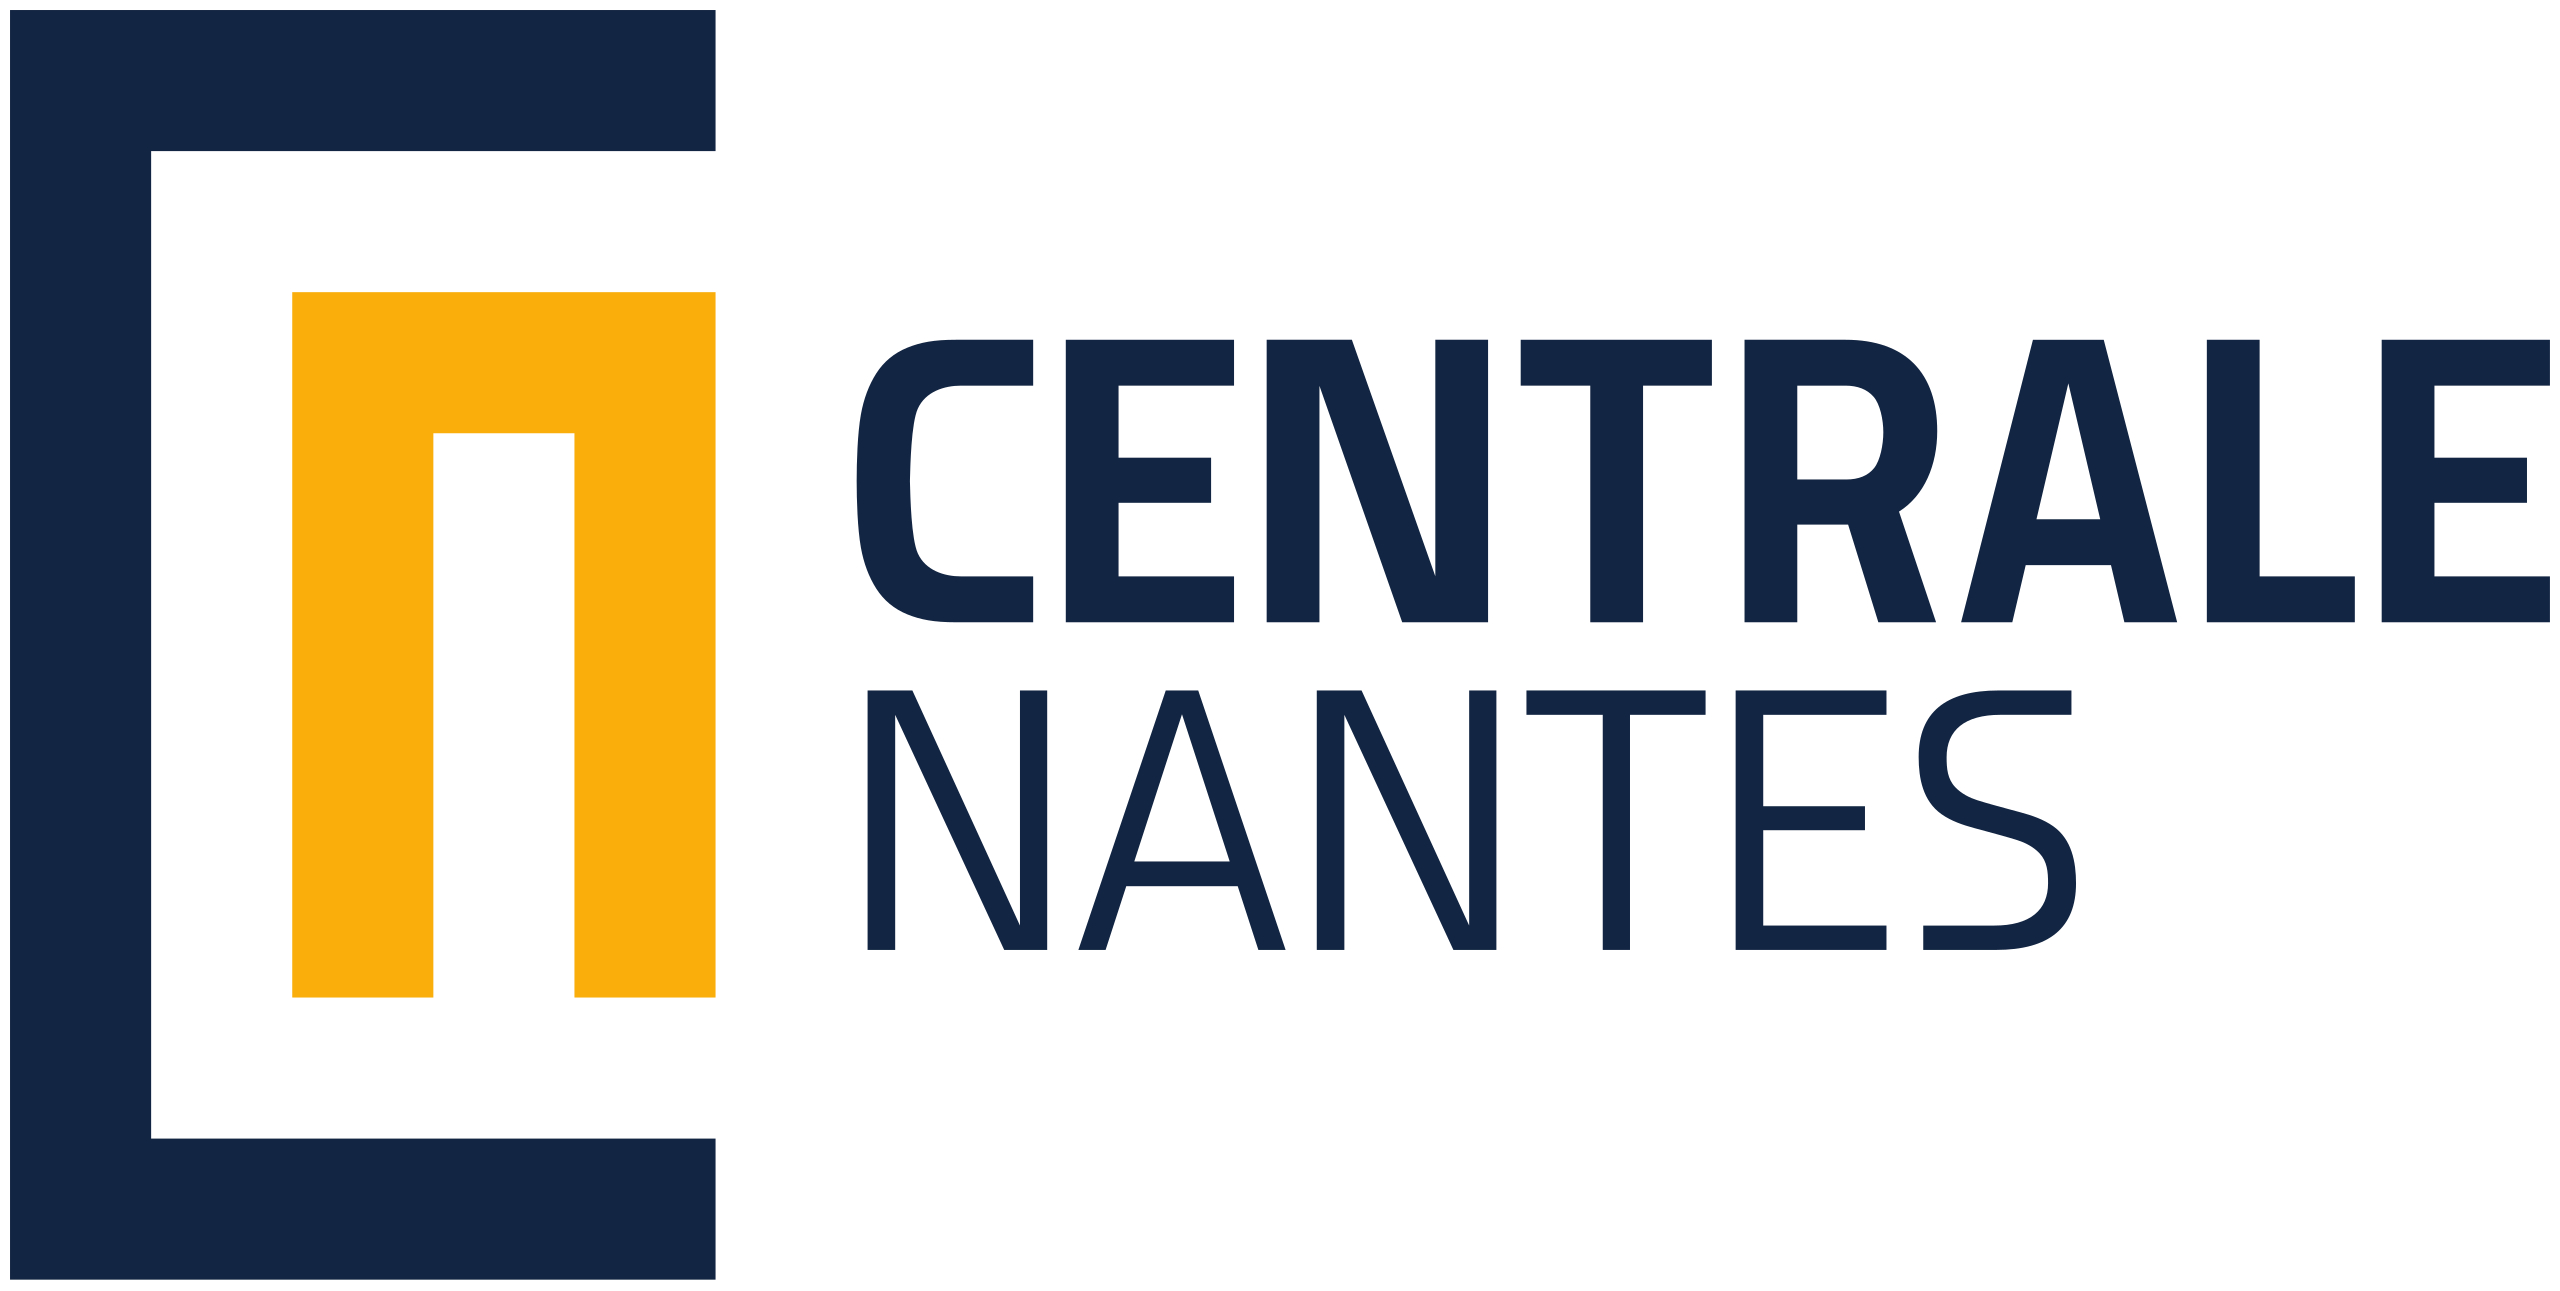 École Centrale Nantes